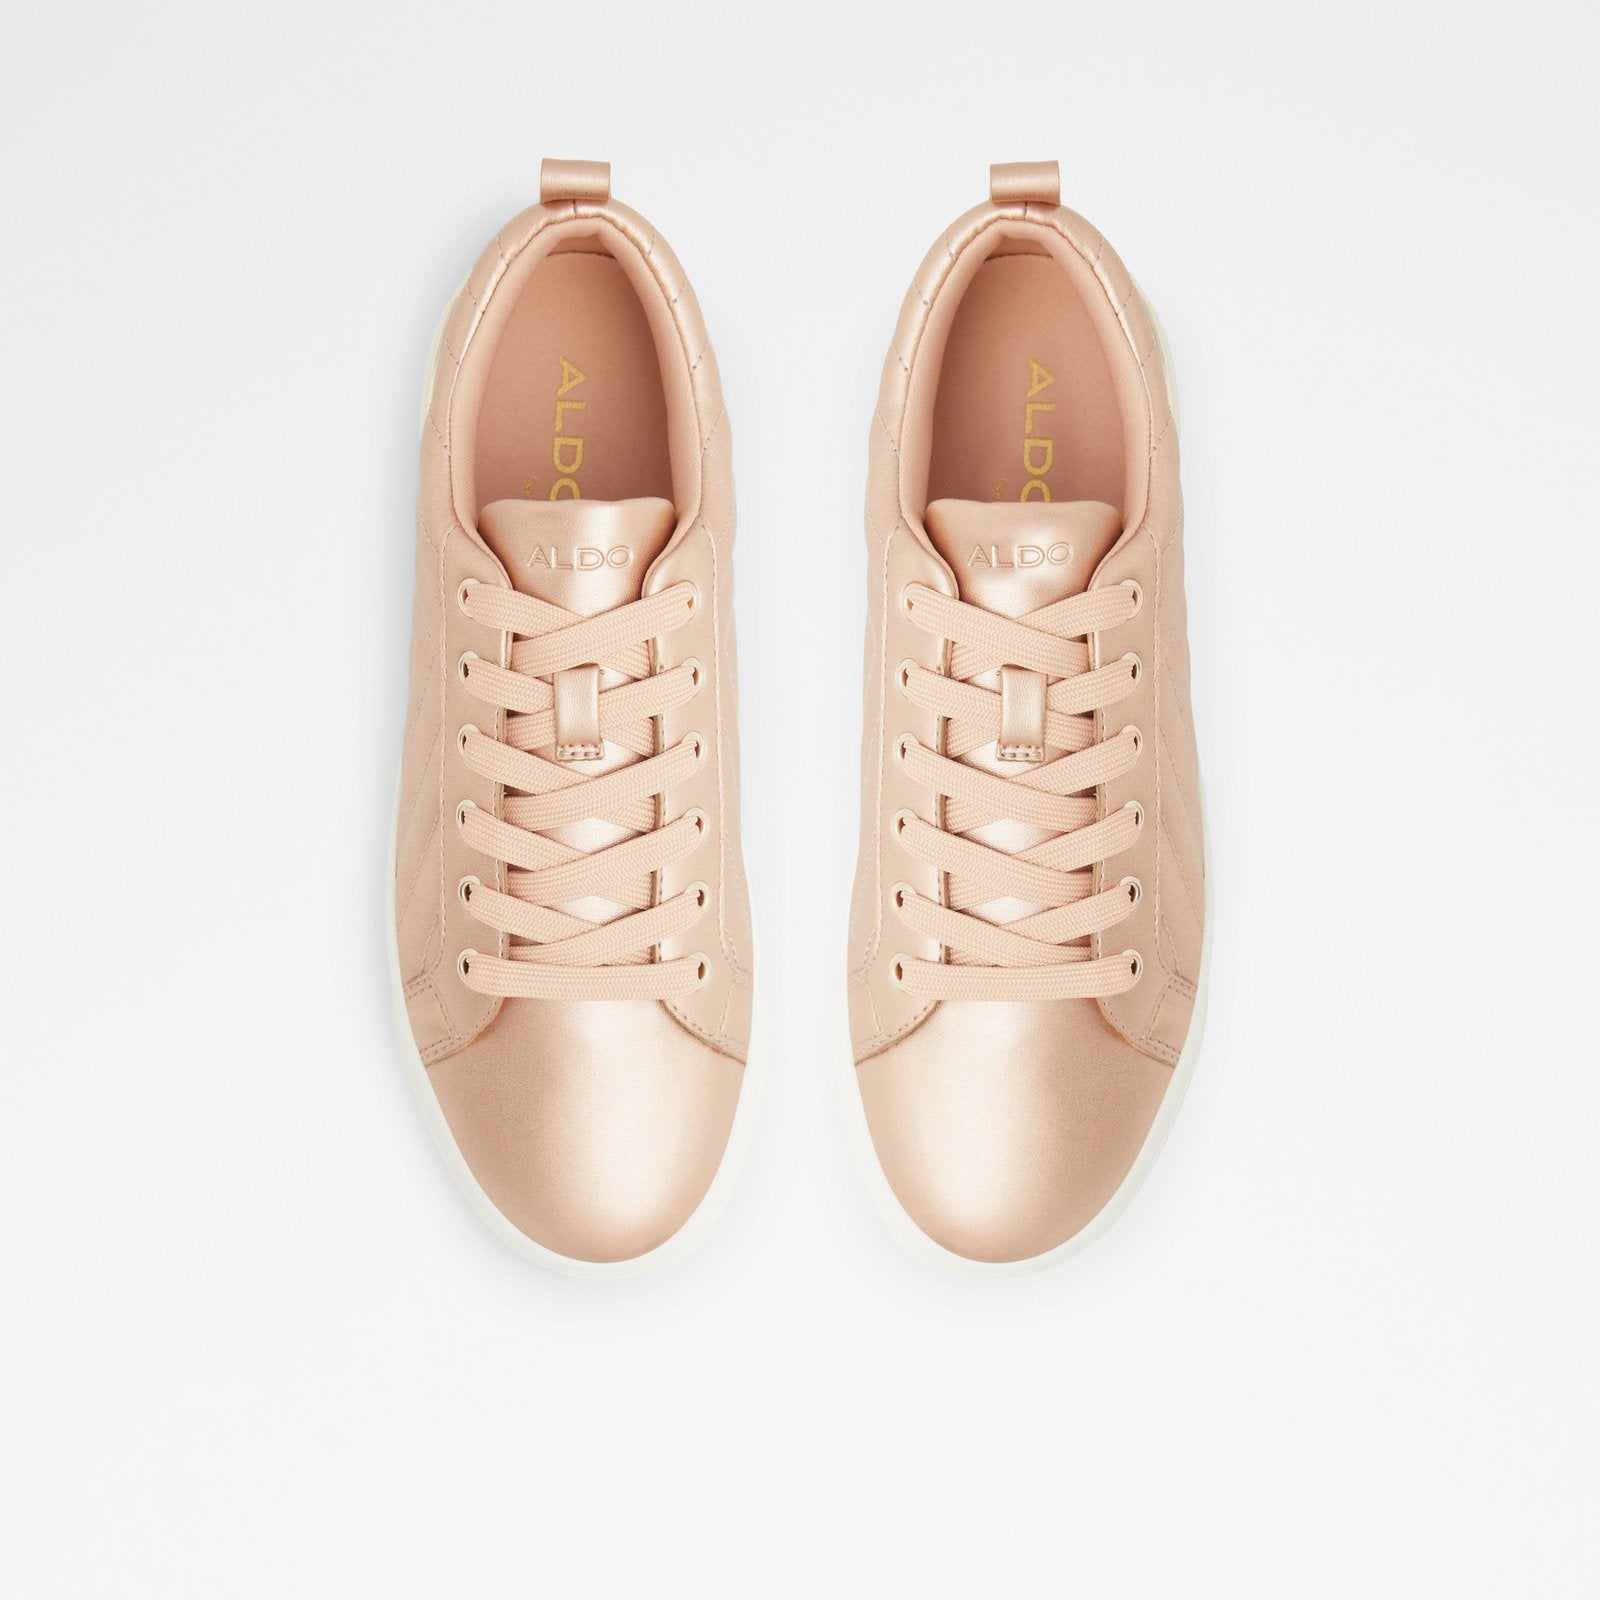 Dilathielle Women Shoes - Rose Gold - ALDO KSA